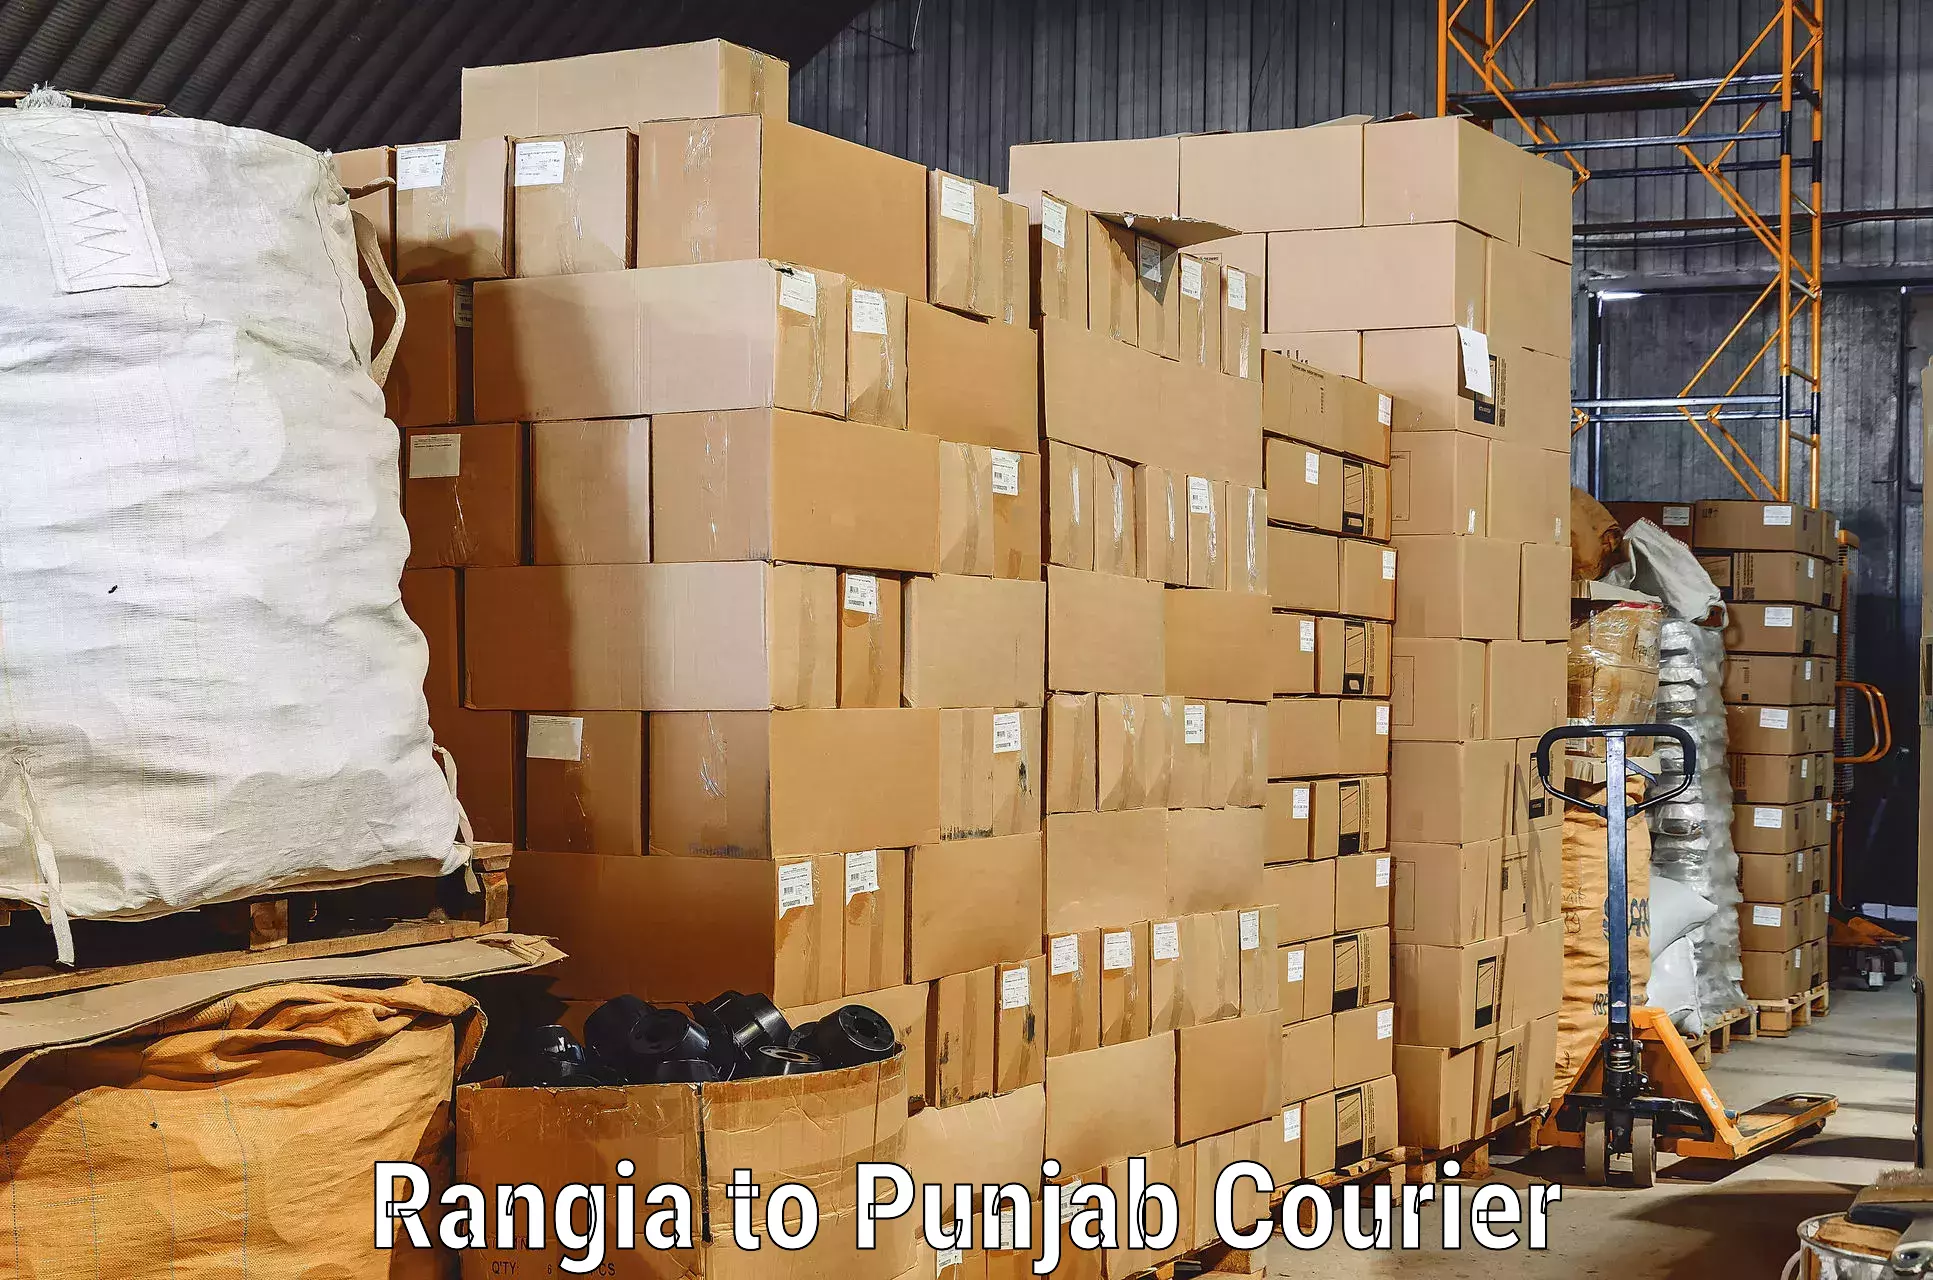 Furniture transport experts Rangia to Punjab